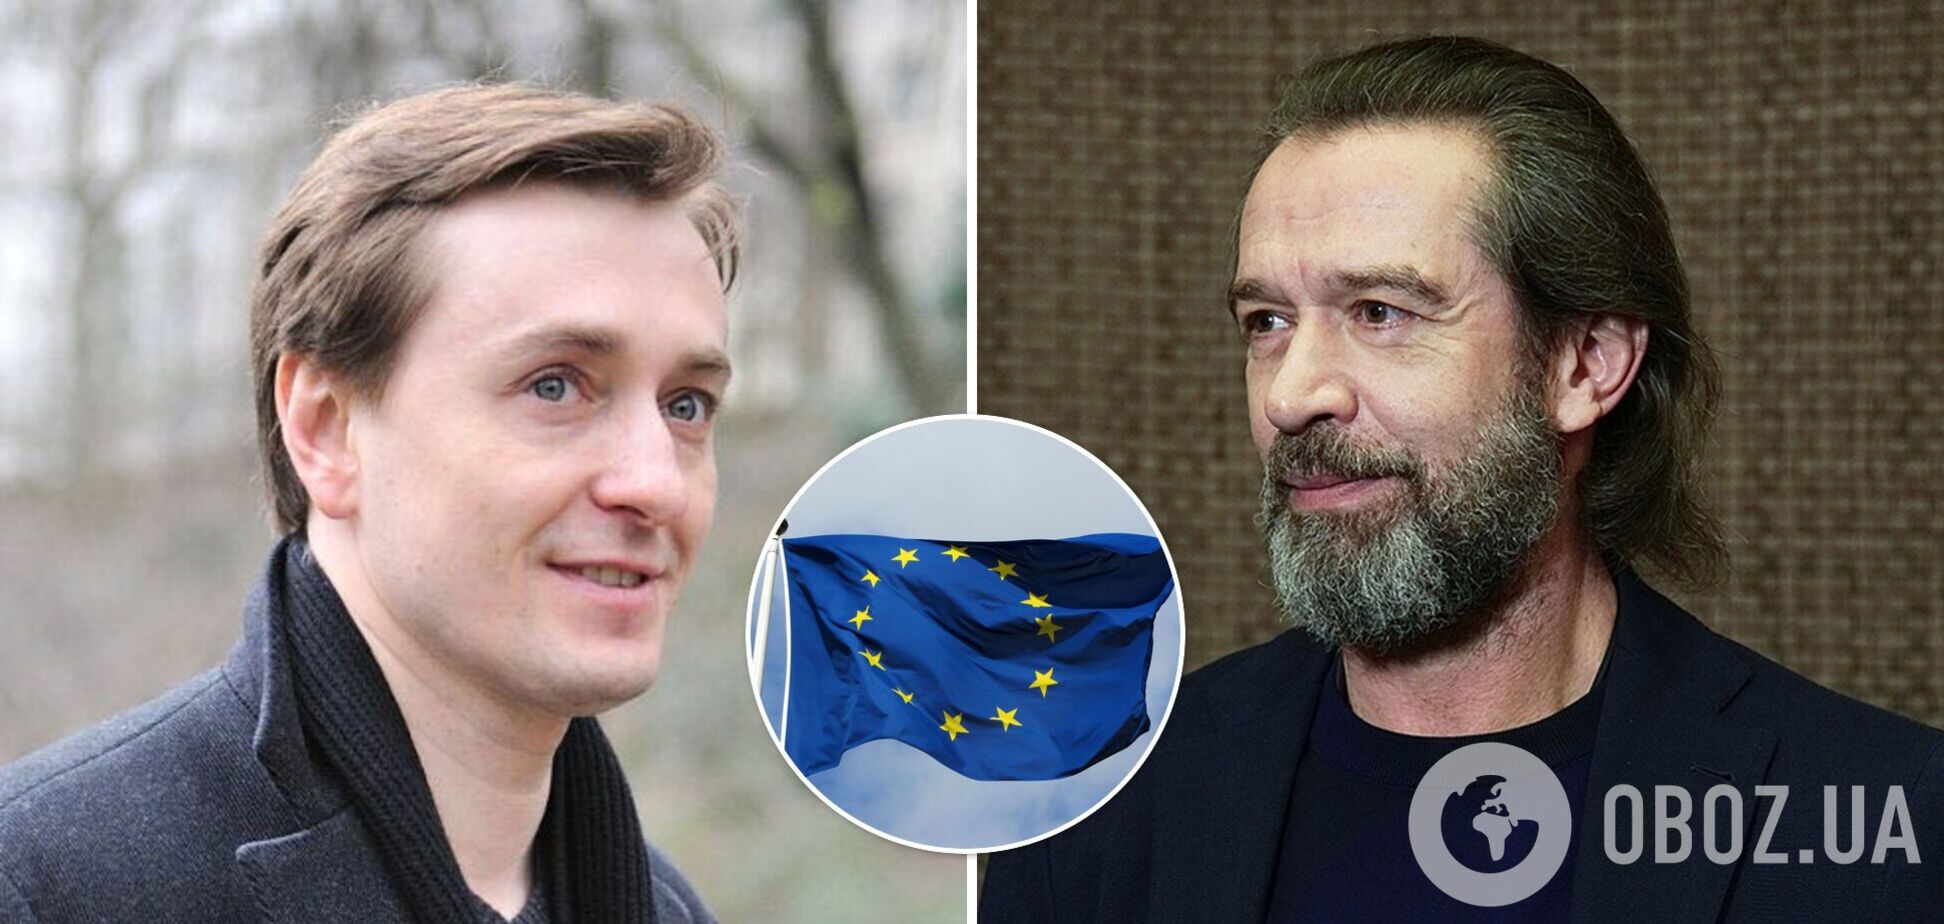 Машков та Безруков потрапили під санкції ЄС за підтримку Путіна та війни в Україні